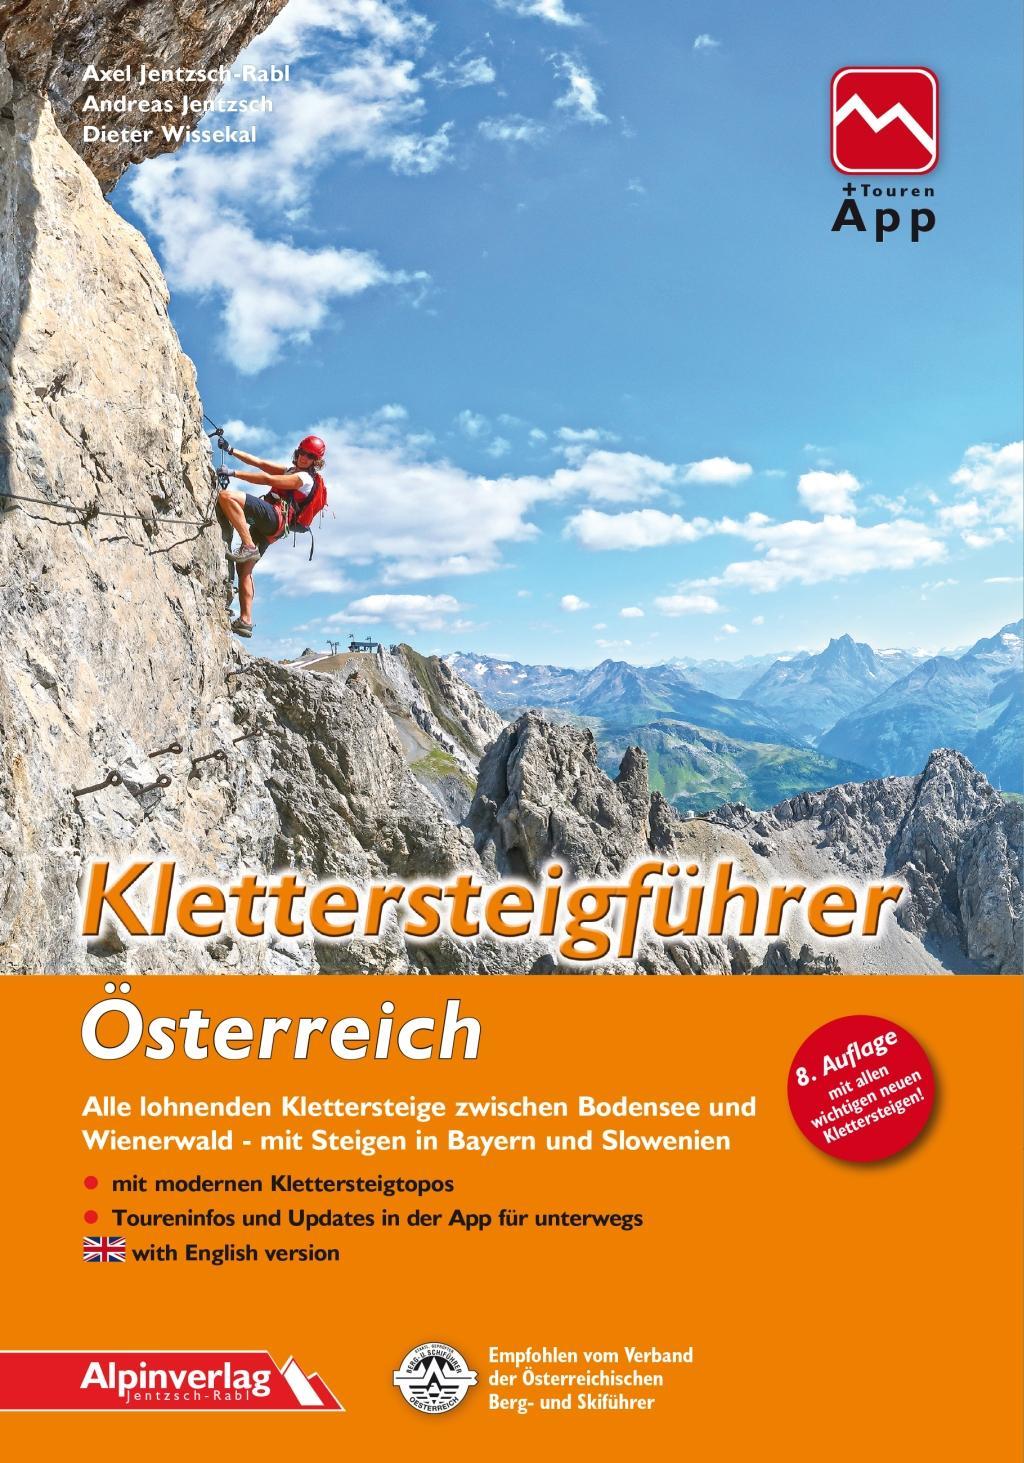 Klettersteigführer Österreich Alle lohnenden Klettersteige zwischen Bodensee und Wienerwald, mit Steigen in Bayern und Slowenien, mit Touren-App Zugang